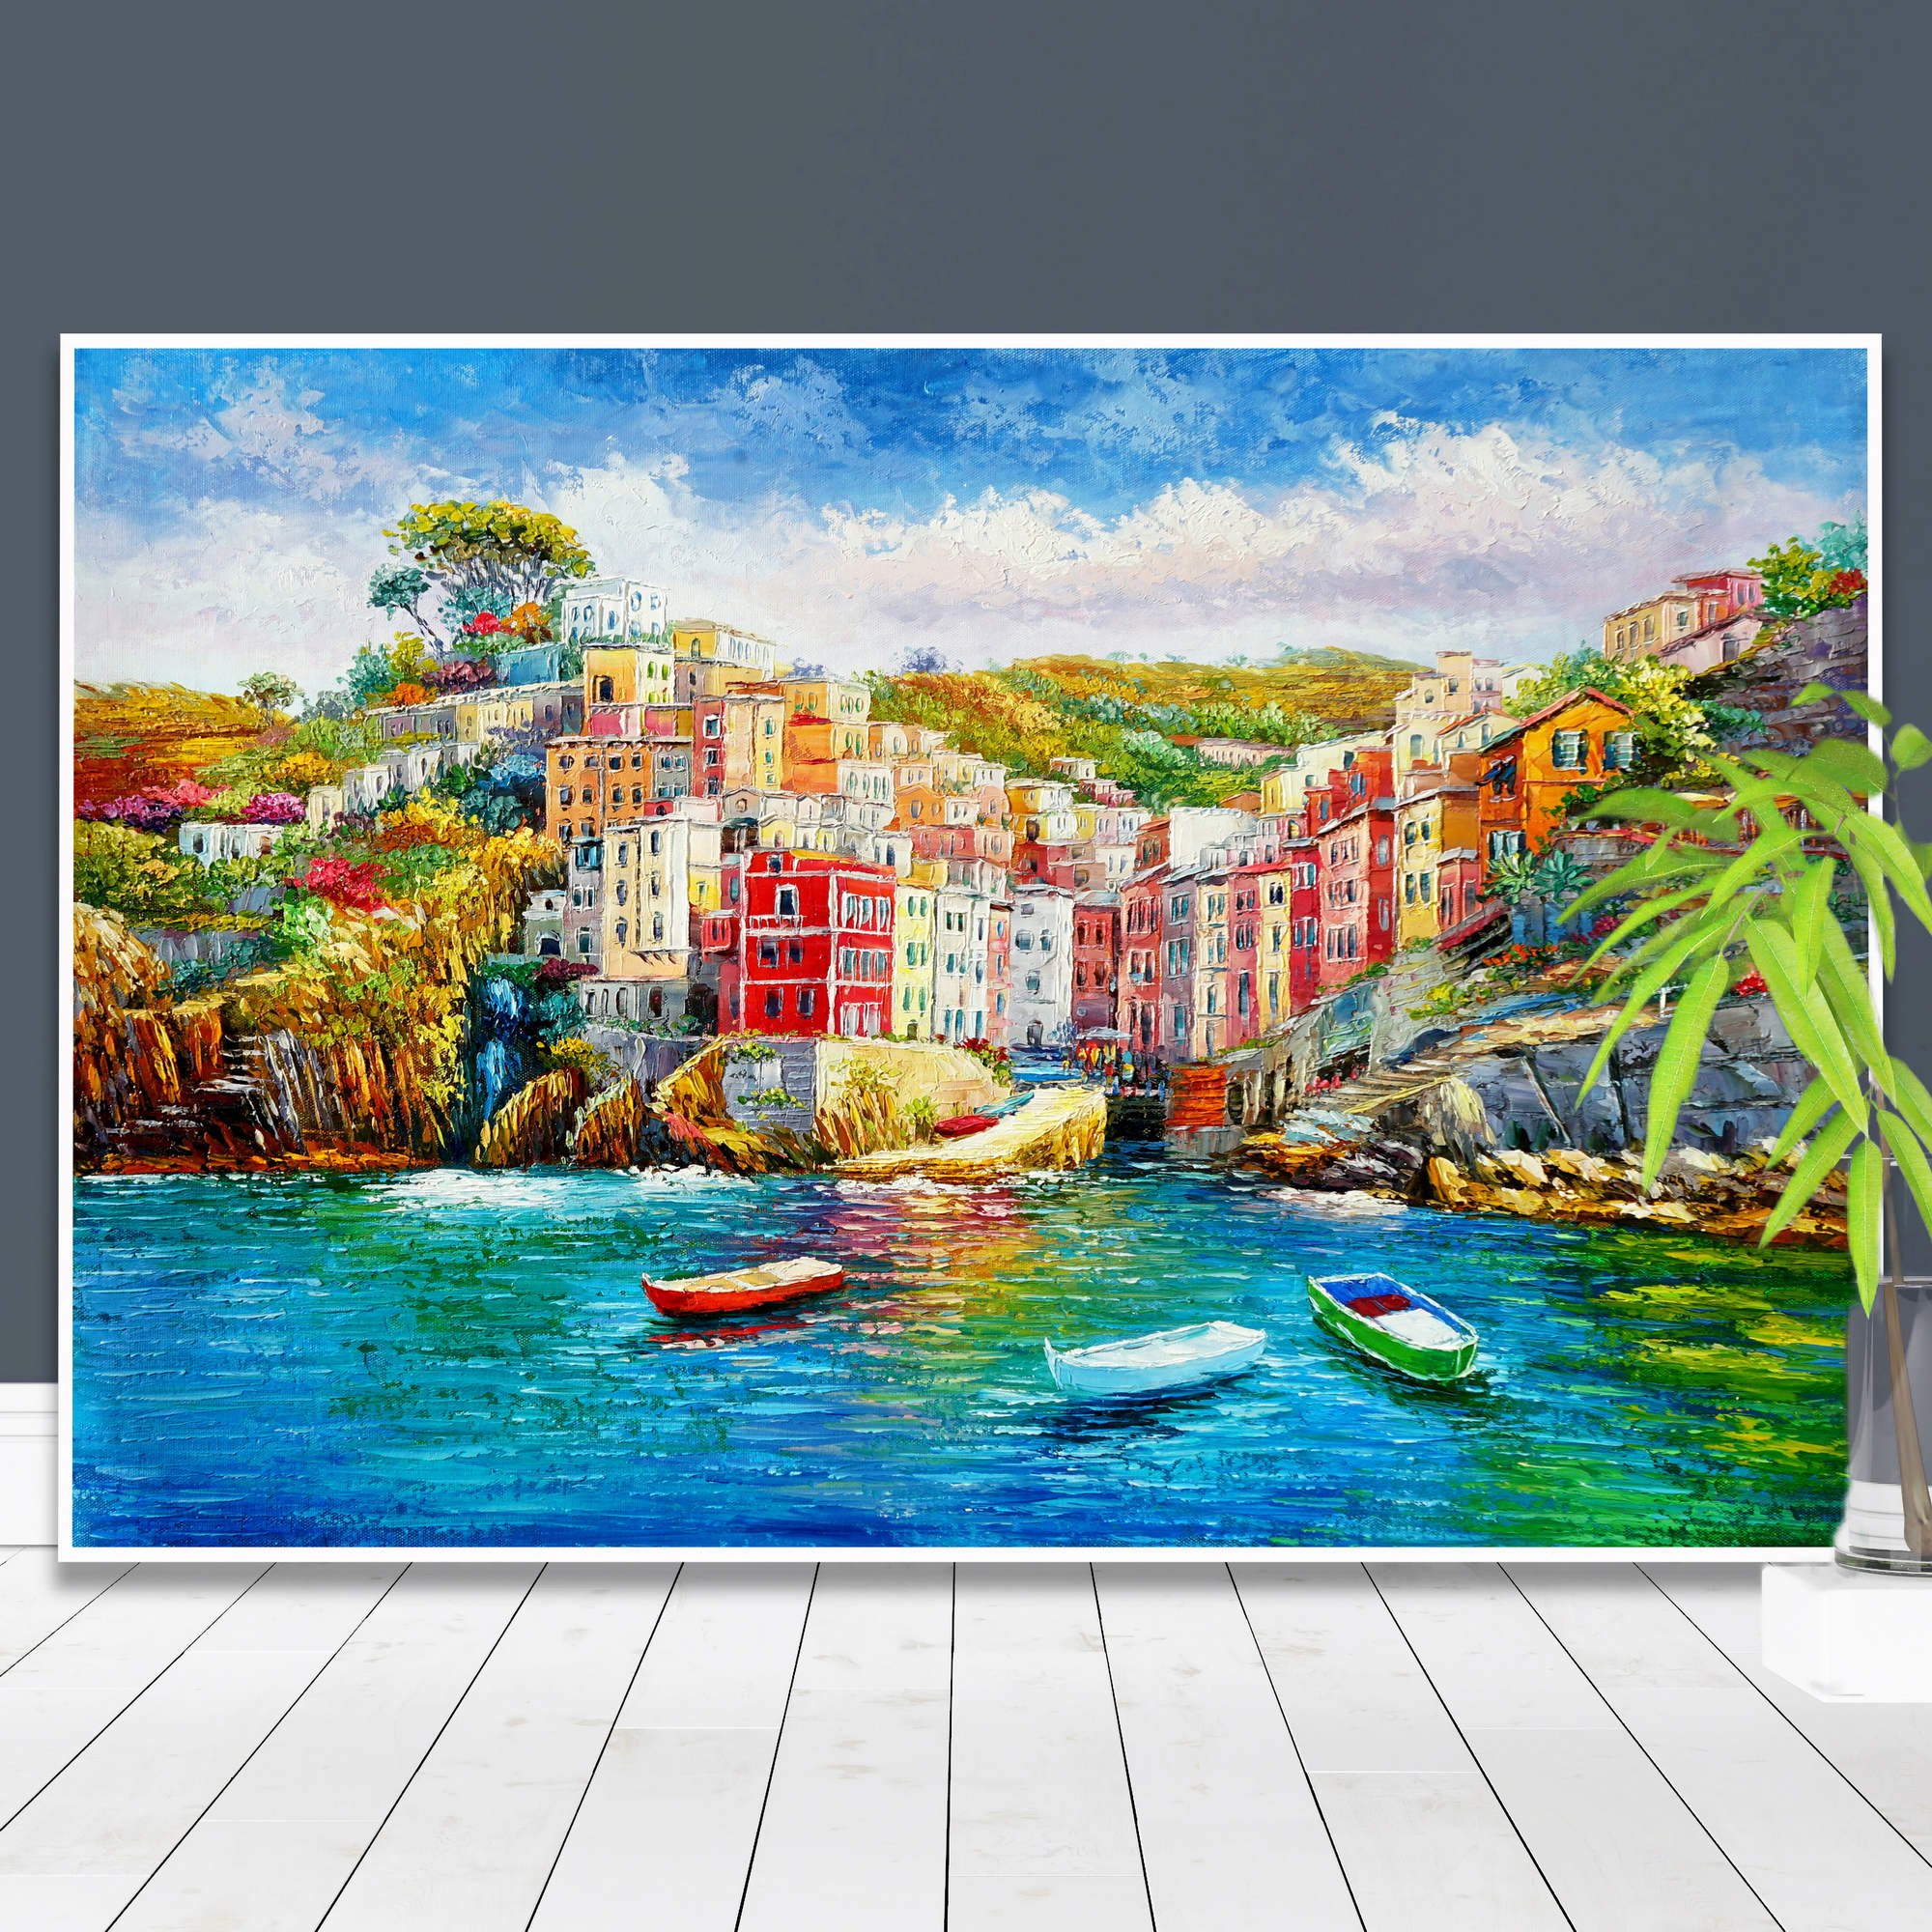 Dipinto delle Cinque Terre, Riomaggiore con le sue case colorate